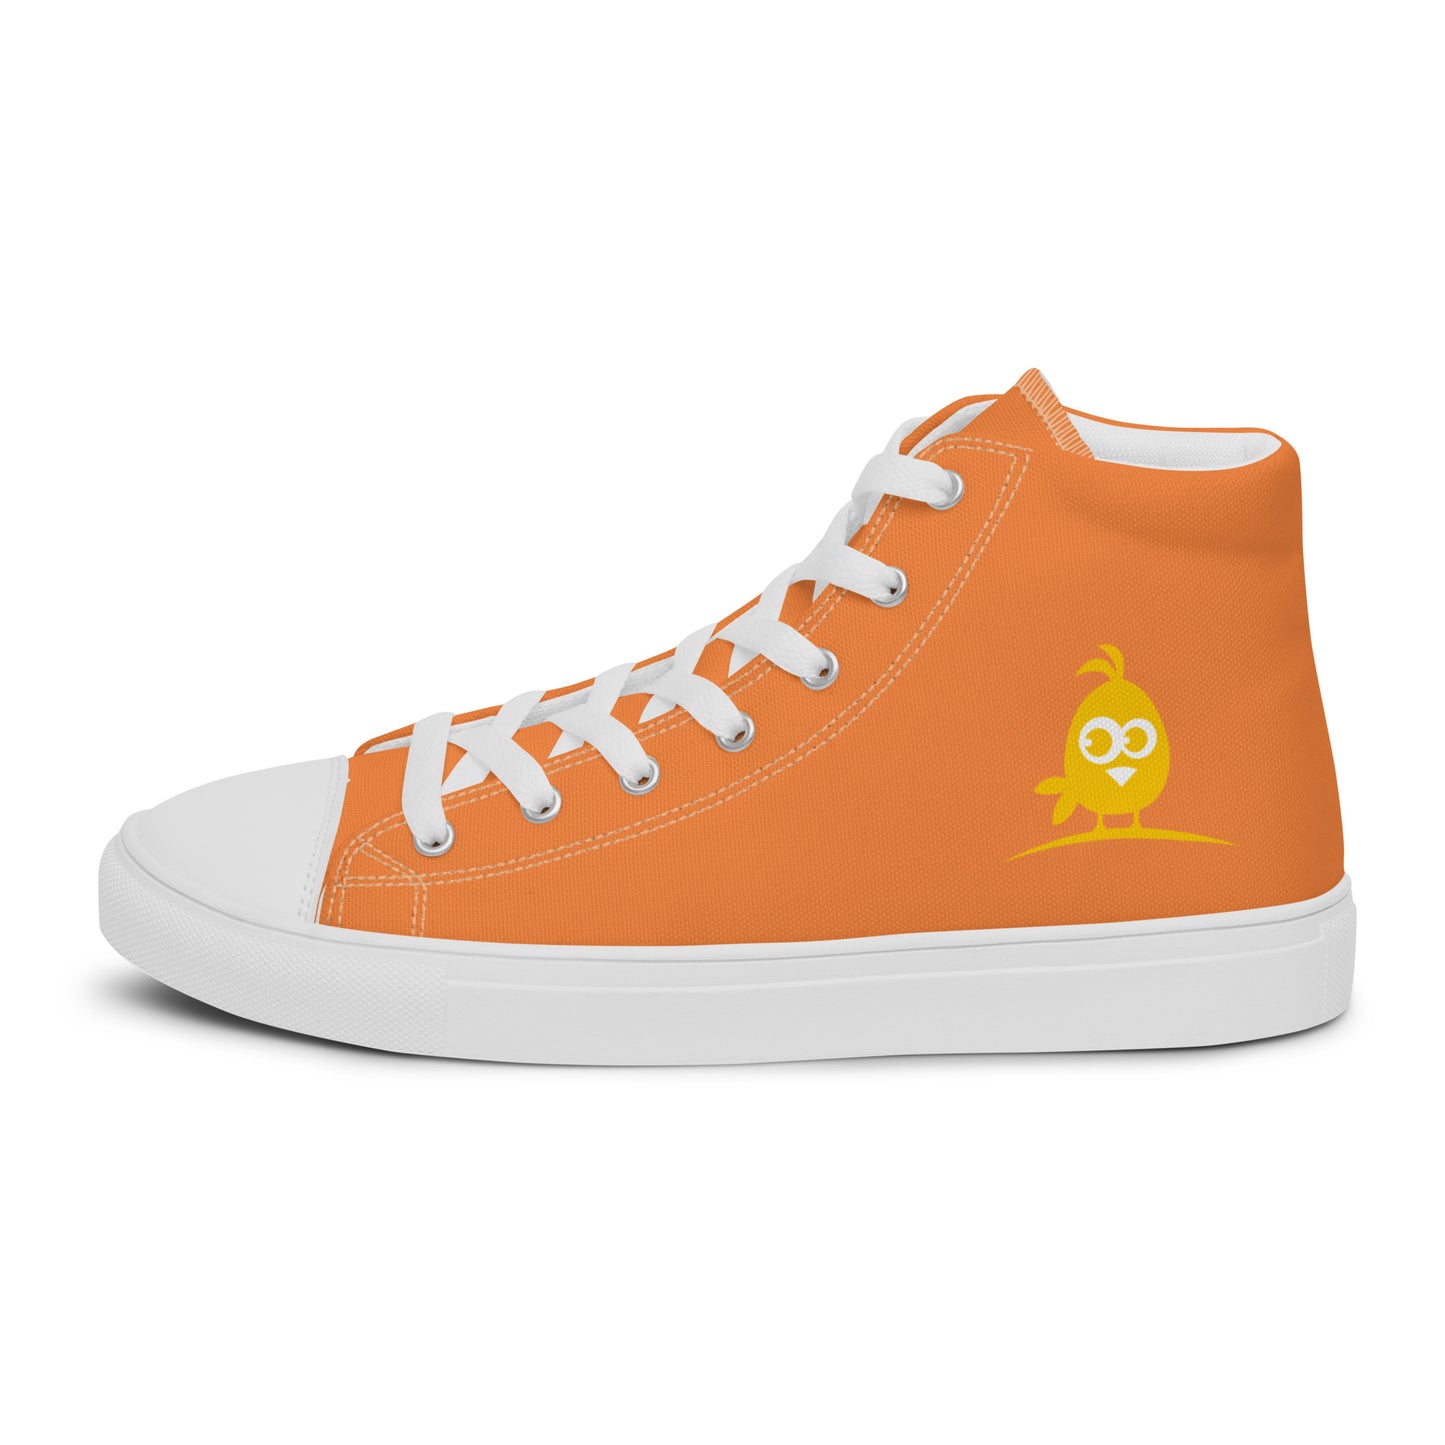 Orange WC Men’s high top canvas shoes